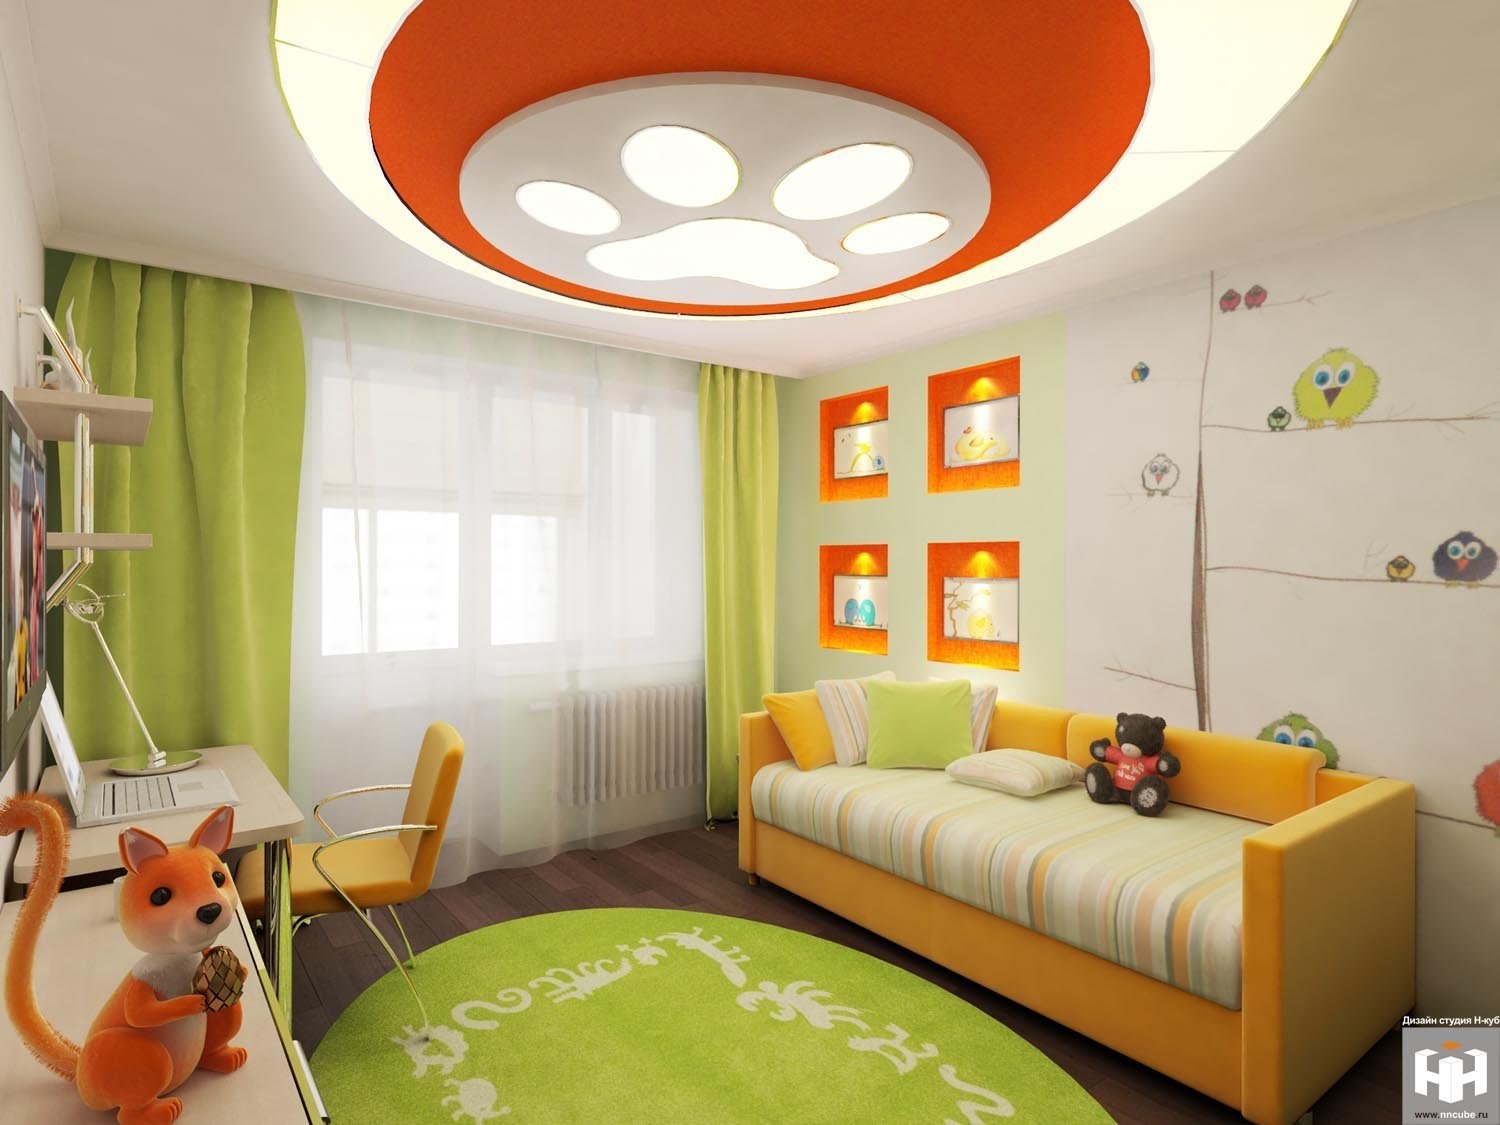 Решение для маленьких детей. Детская интерьер. Детская в оранжевых тонах. Интерьерные решения для детской комнаты. Детская в оранжево зеленом цвете.